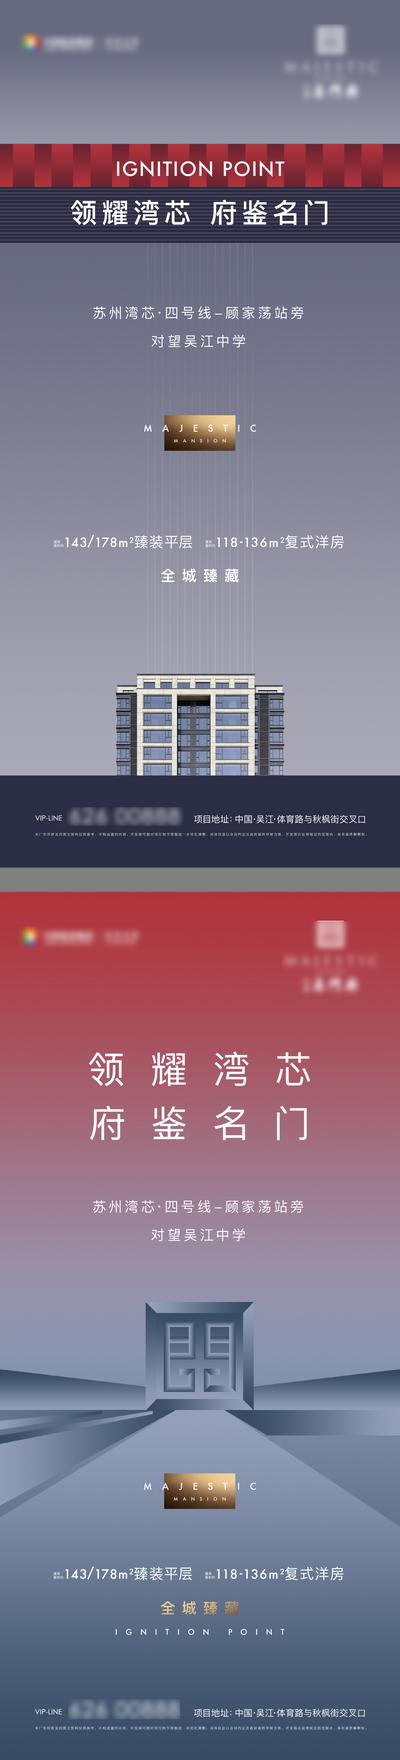 南门网 广告 海报 地产 价值点 豪宅 品牌 区域 教育 系列